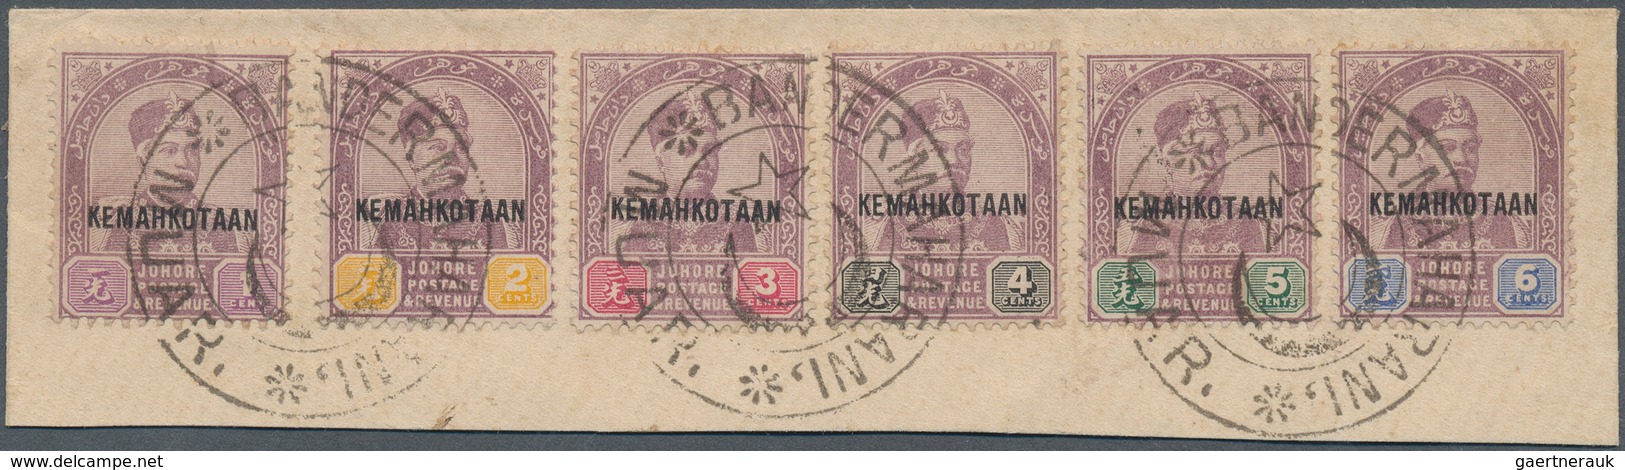 05641 Malaiische Staaten - Johor: 1896, Coronation Of Sultan Ibrahim Part Set Of Six 1c. To 6c. With Overp - Johore